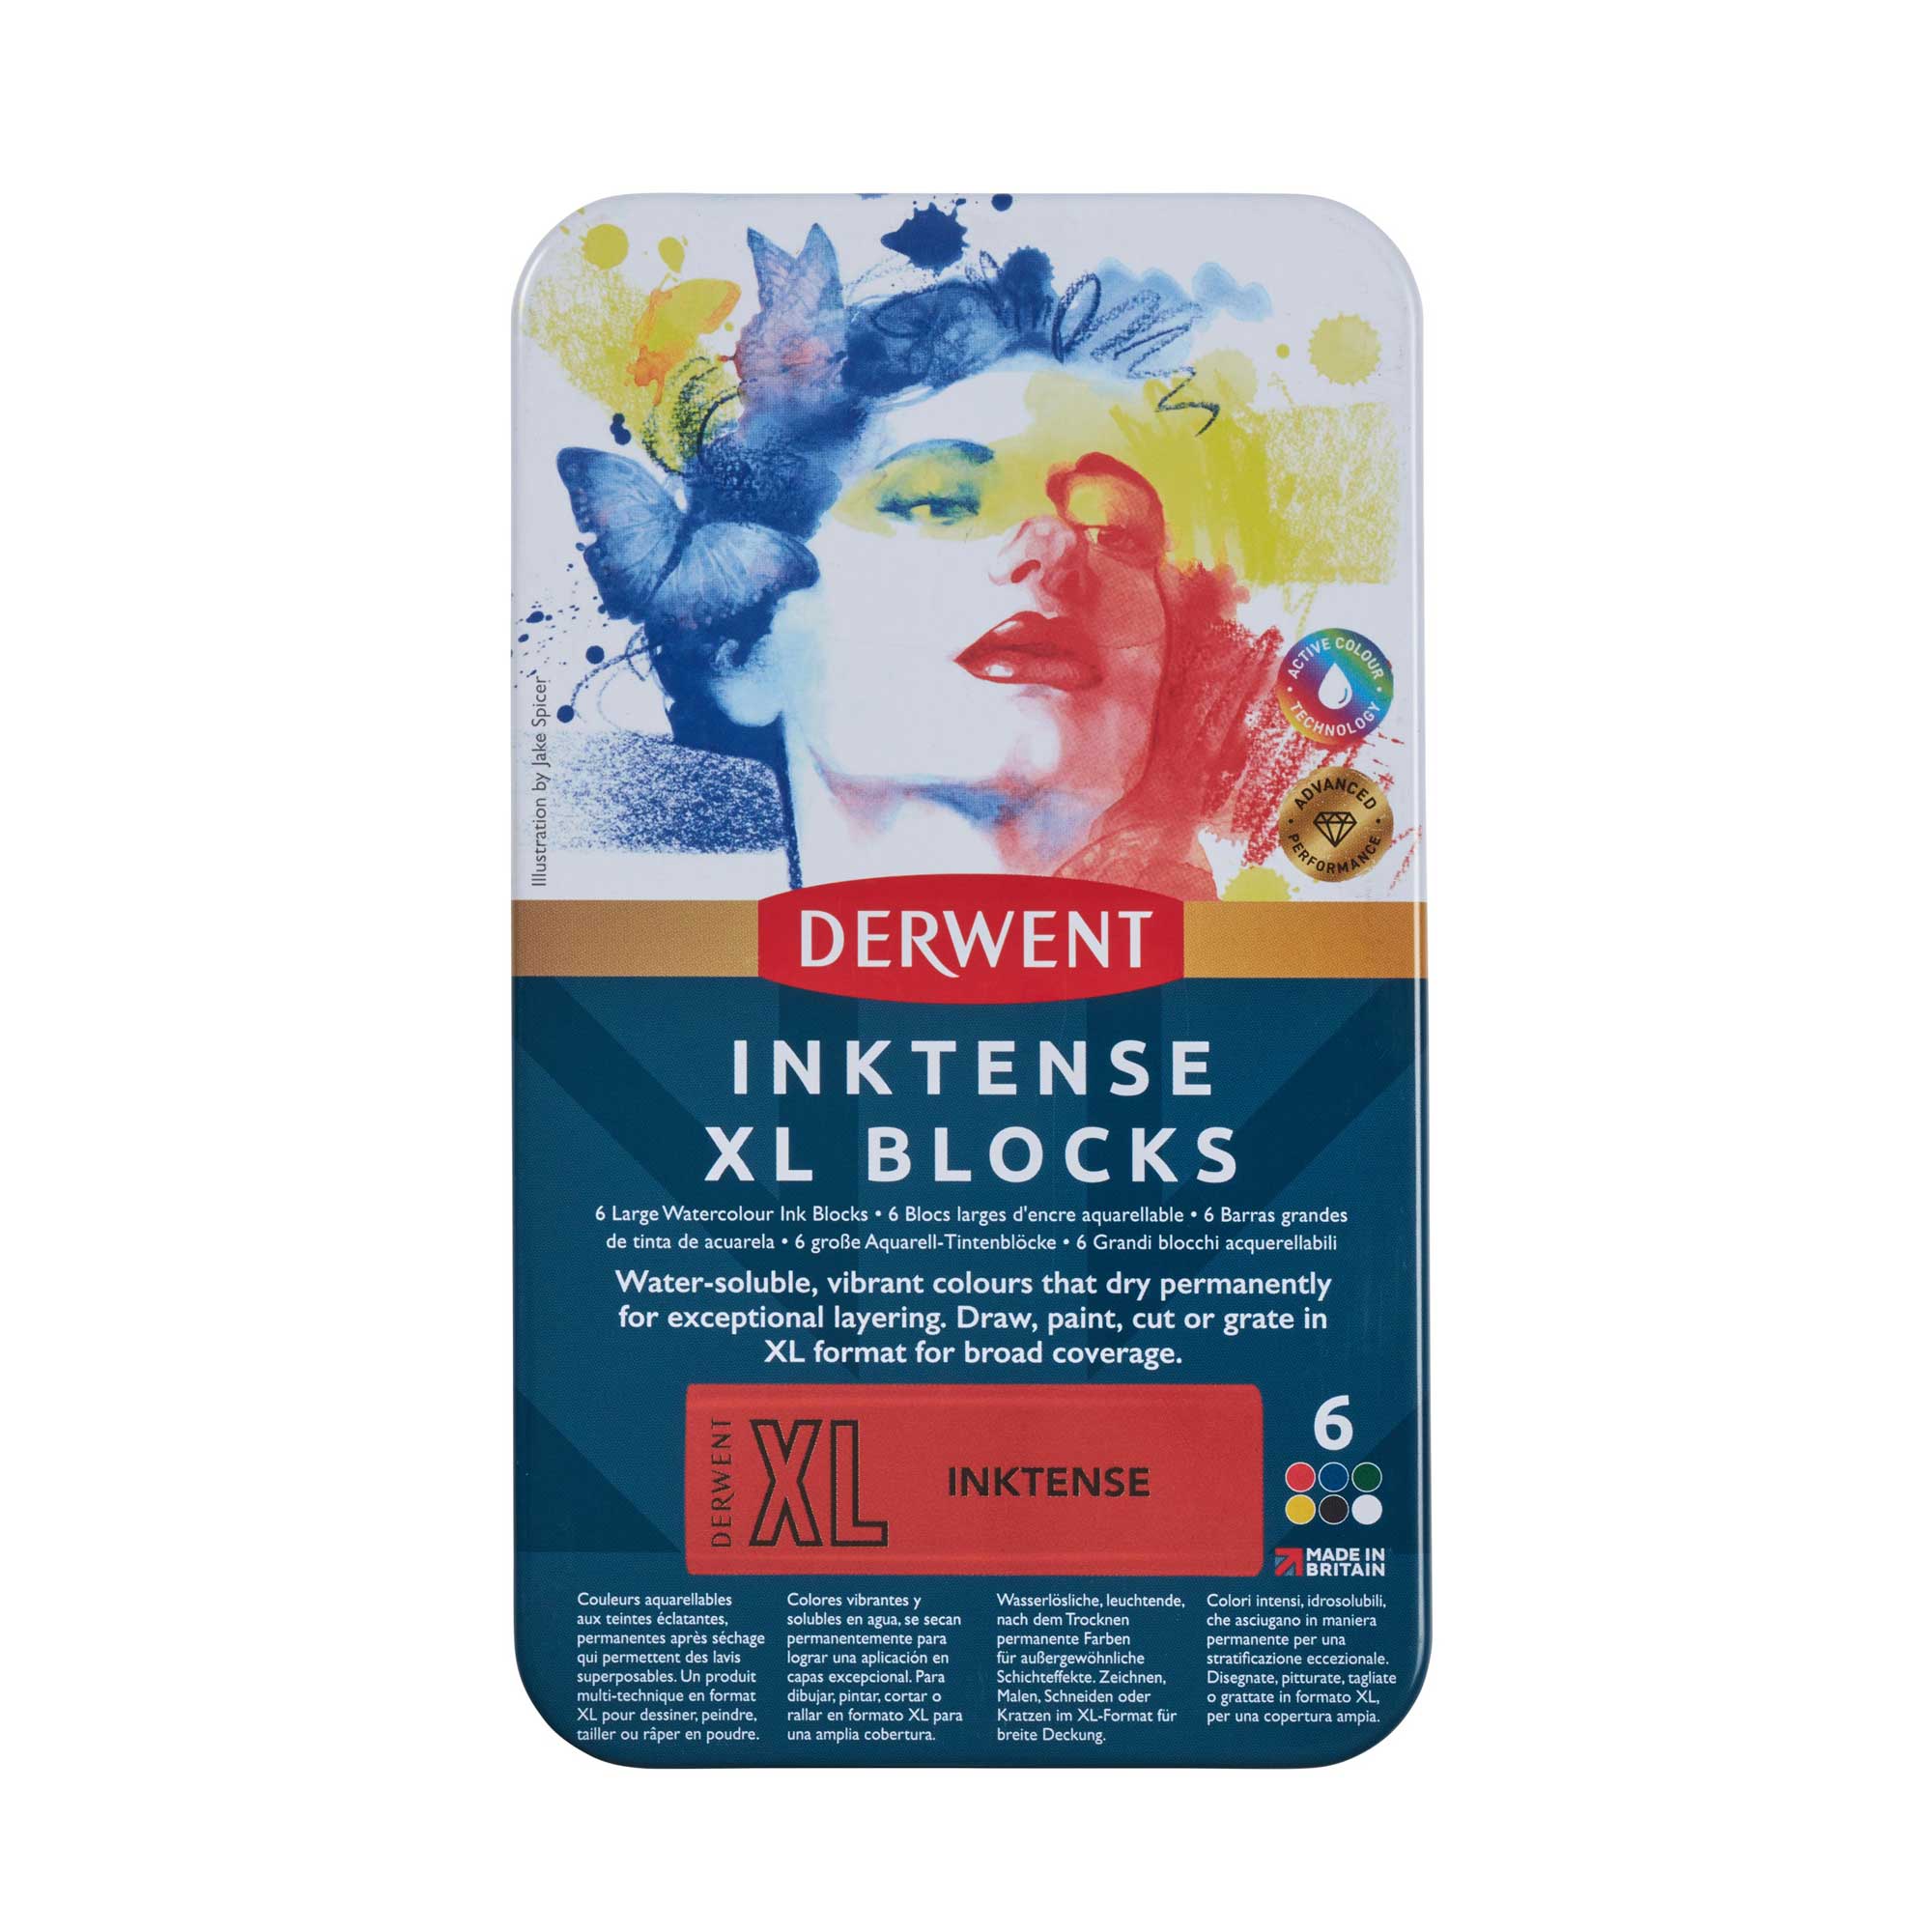 Derwent Inktense XL Blocks Tin of 6